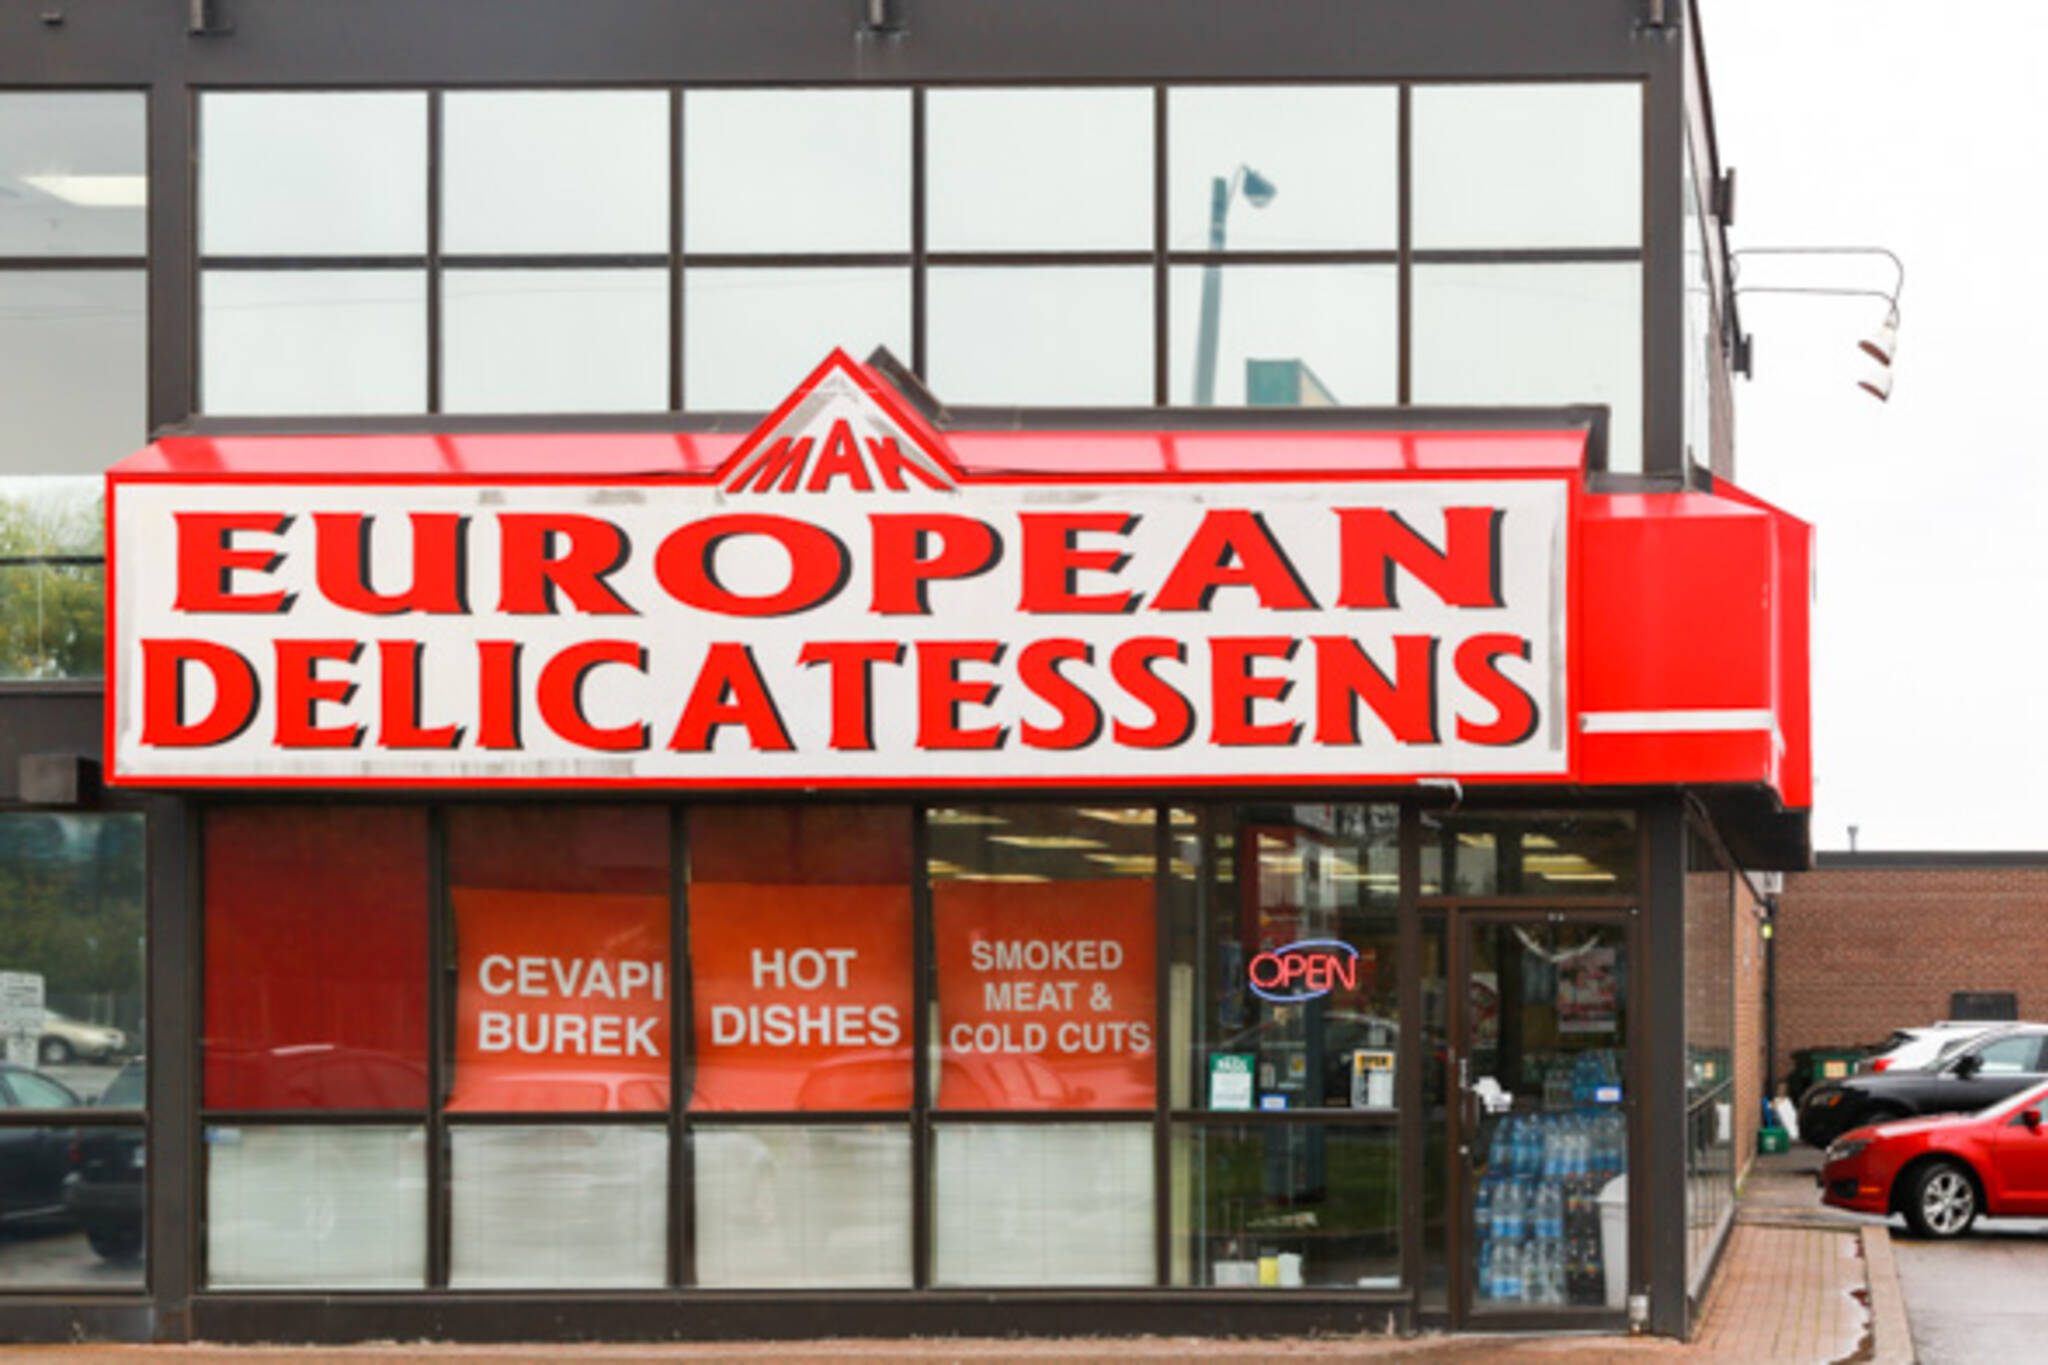 mak european delicatessen